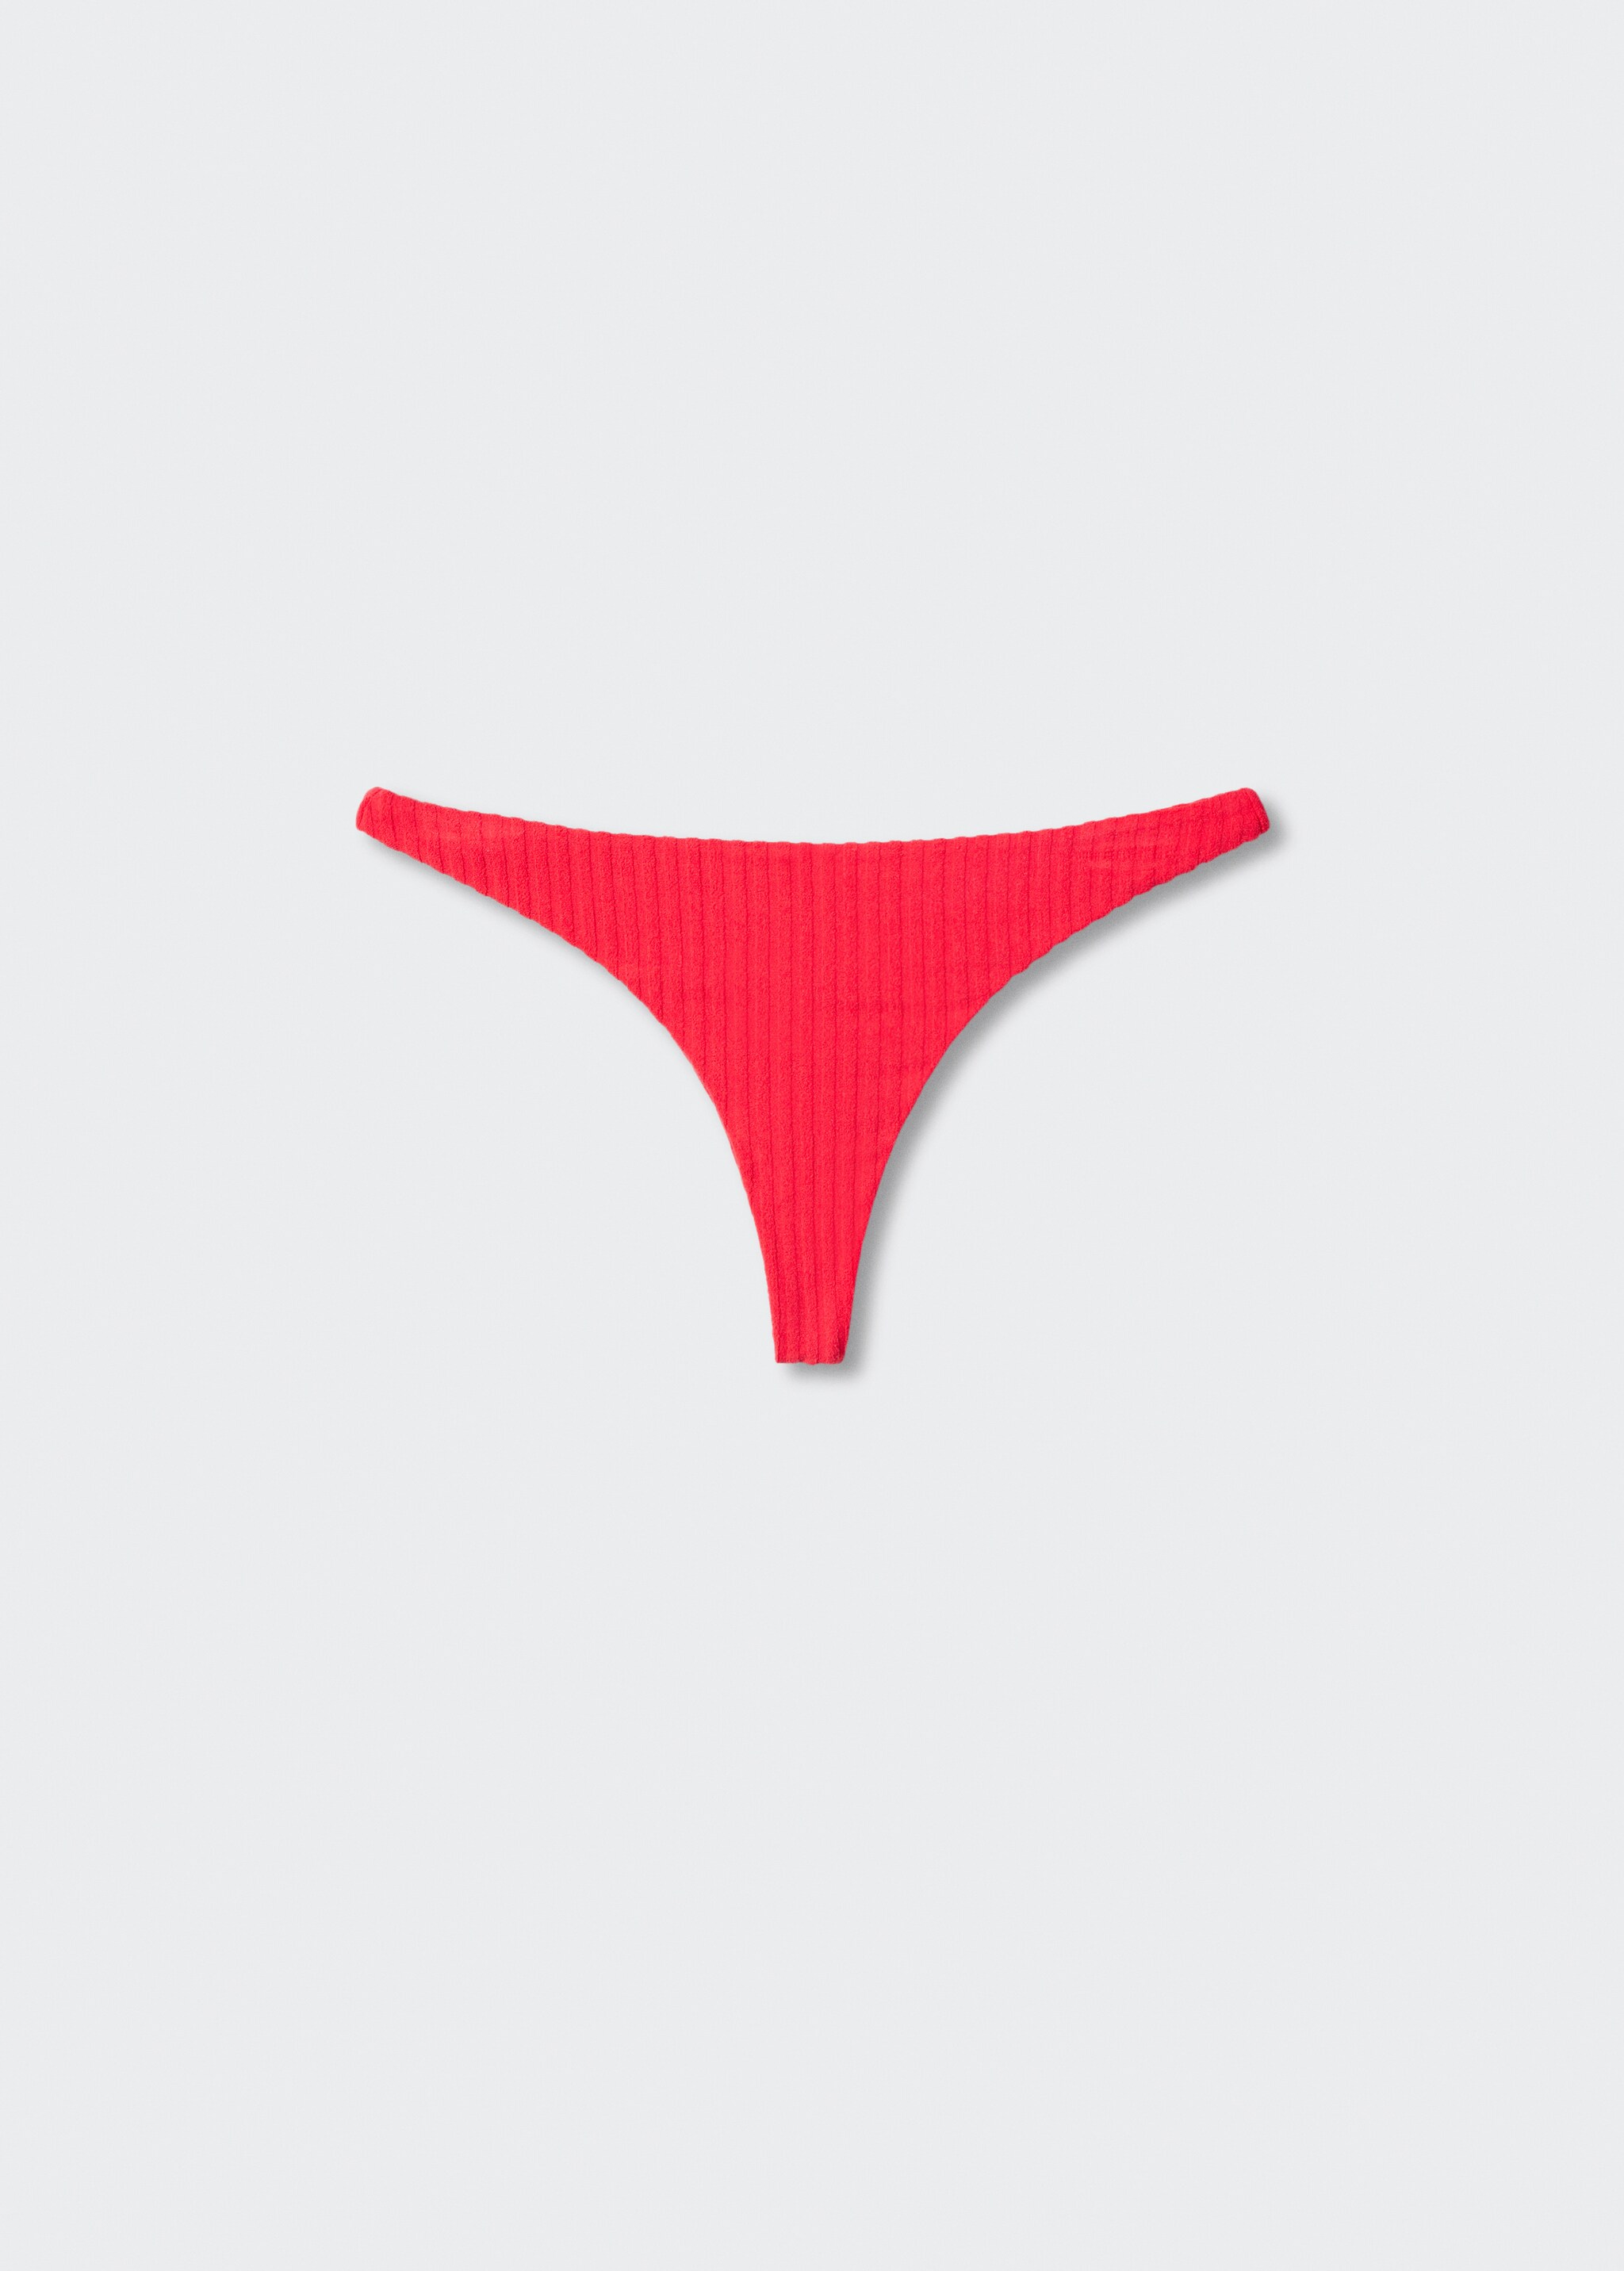 Brasilianischer Bikini-Slip mit Streifentextur - Artikel ohne Model